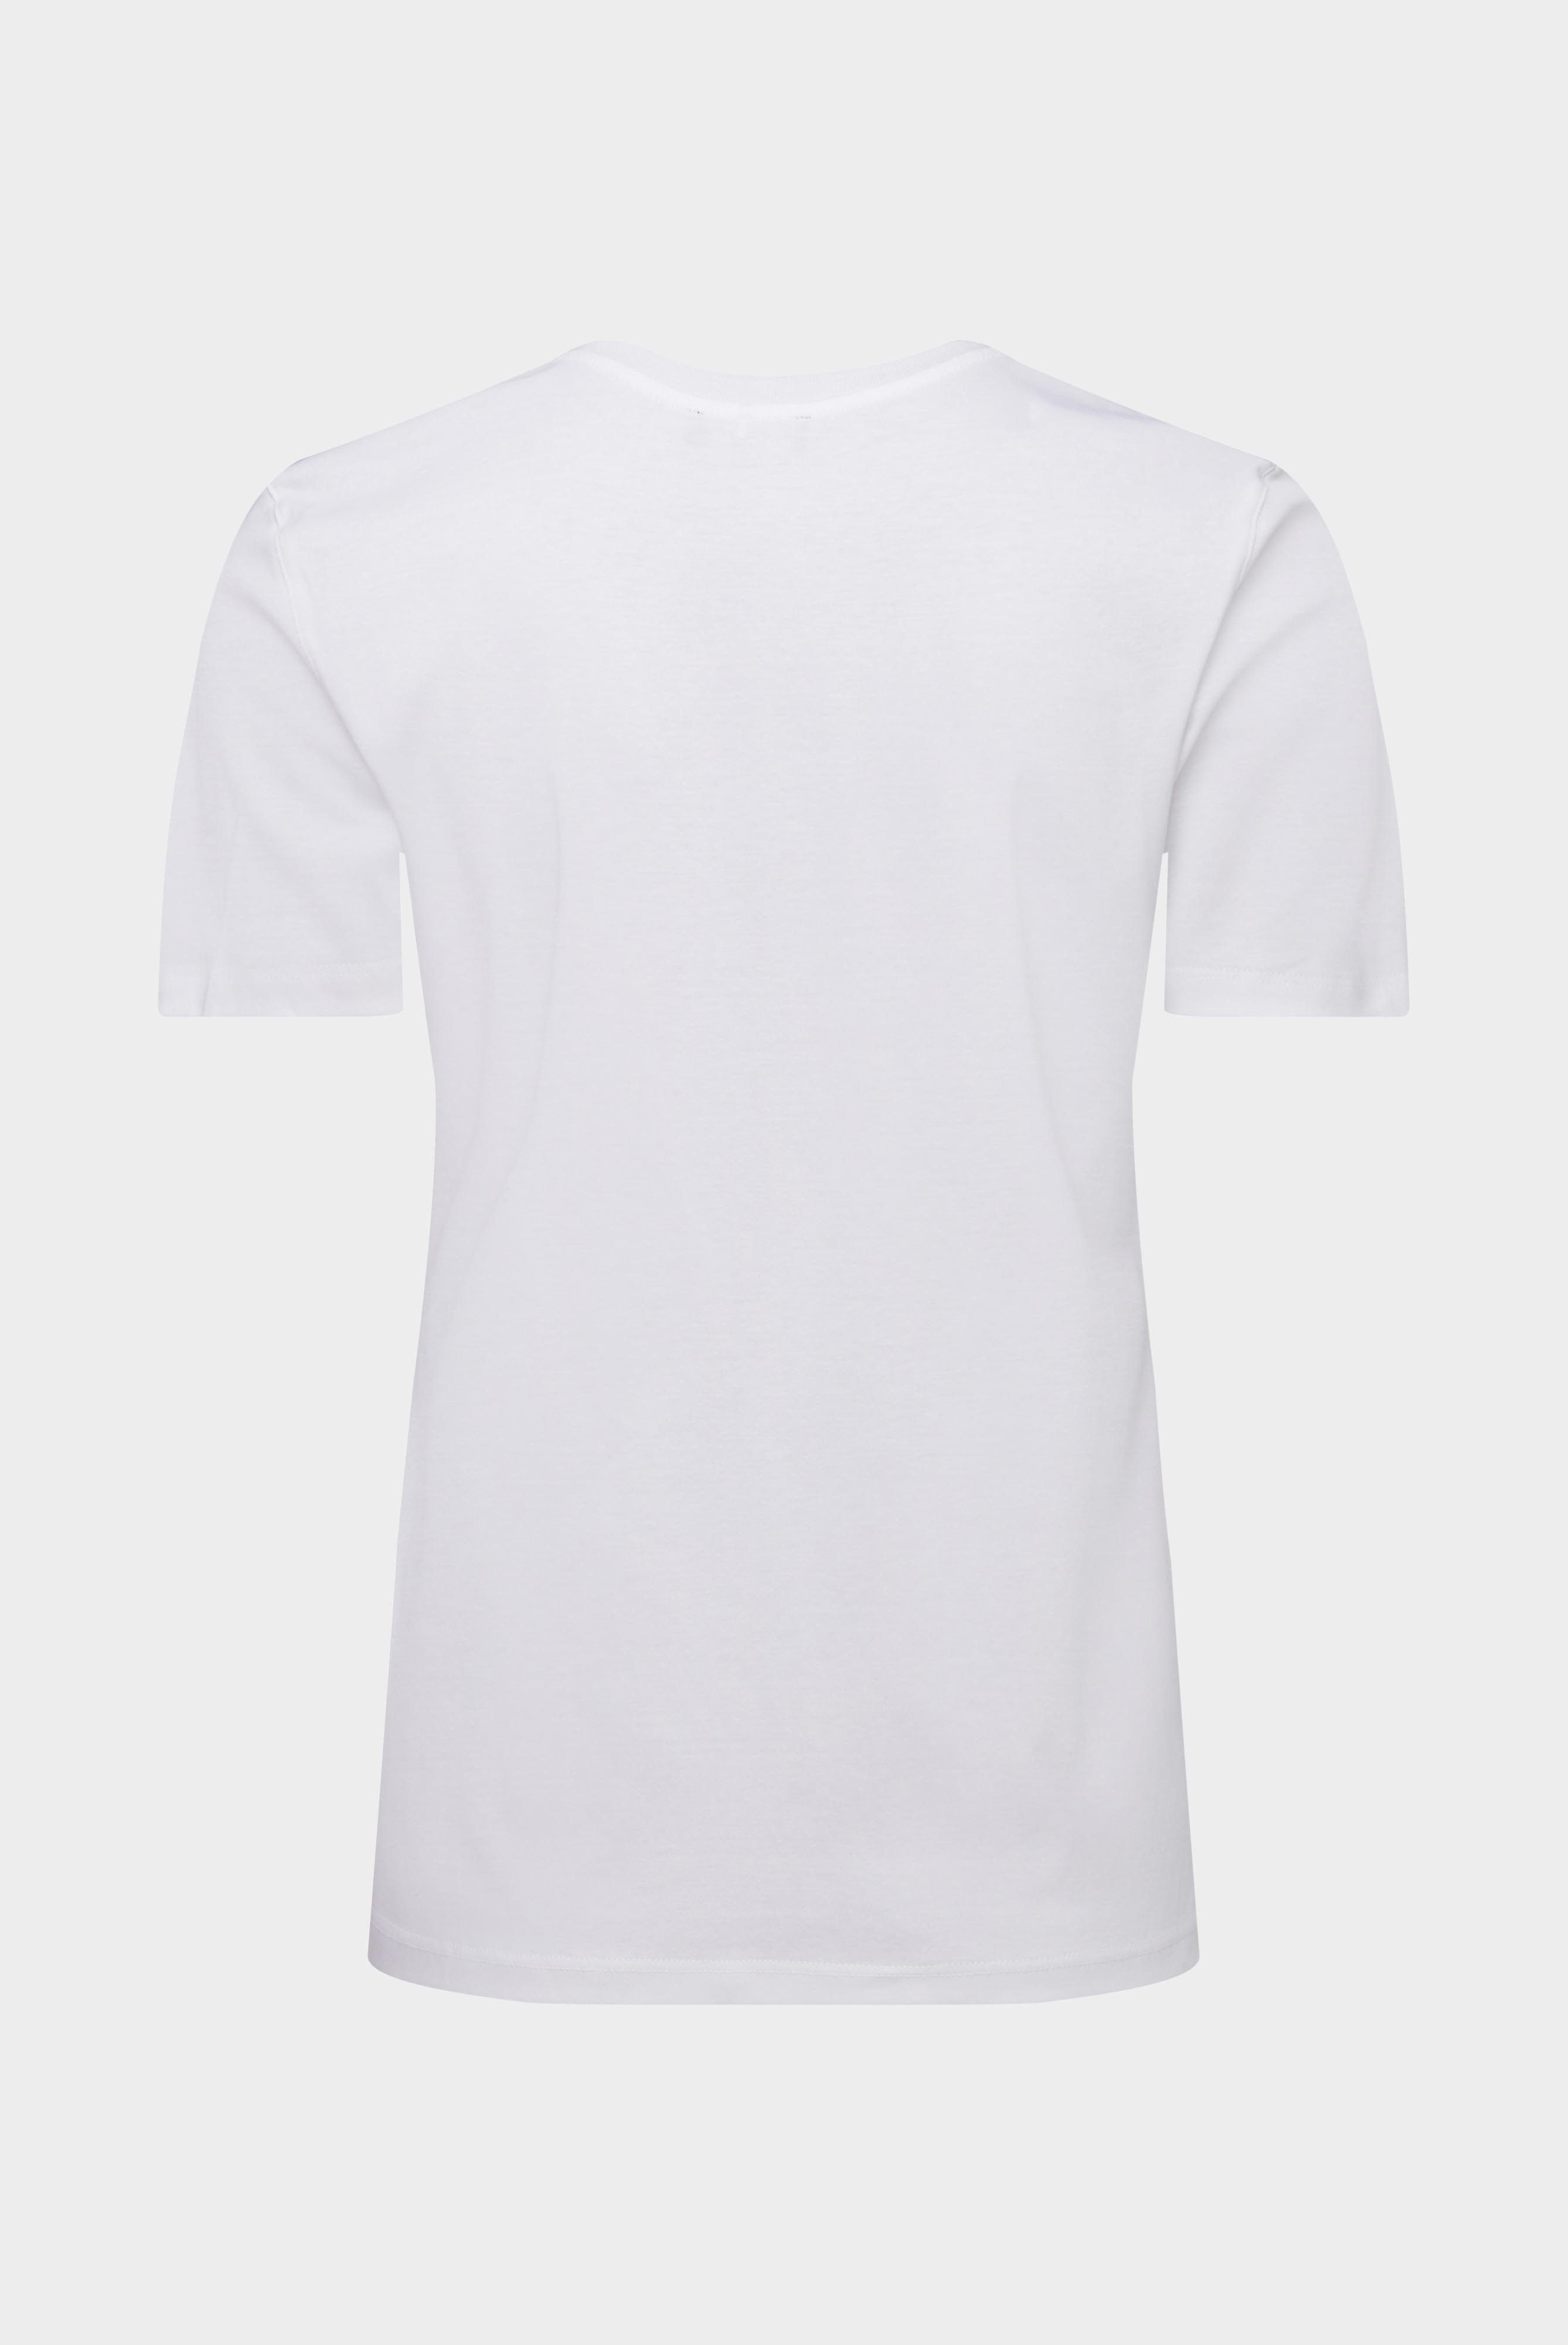 Tops & T-Shirts+Jersey T-Shirt+05.6384.18.180031.000.36